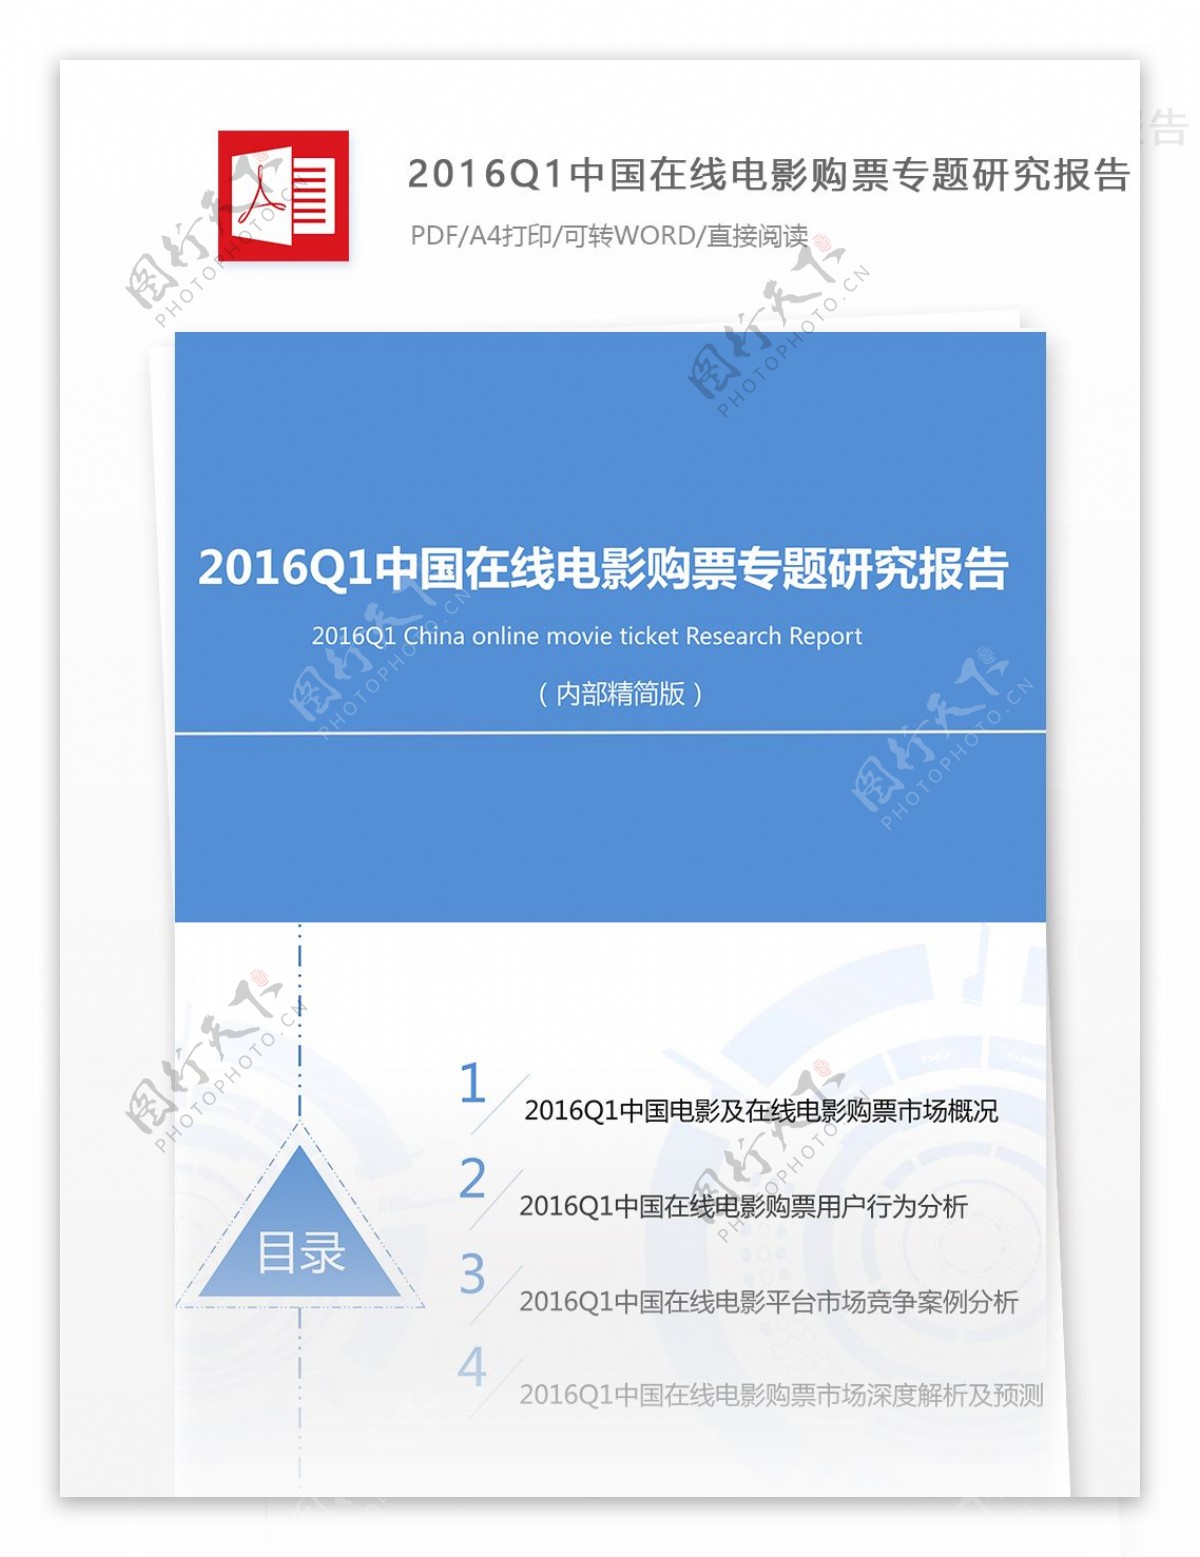 中国在线电影购票专题研究报告规范格式